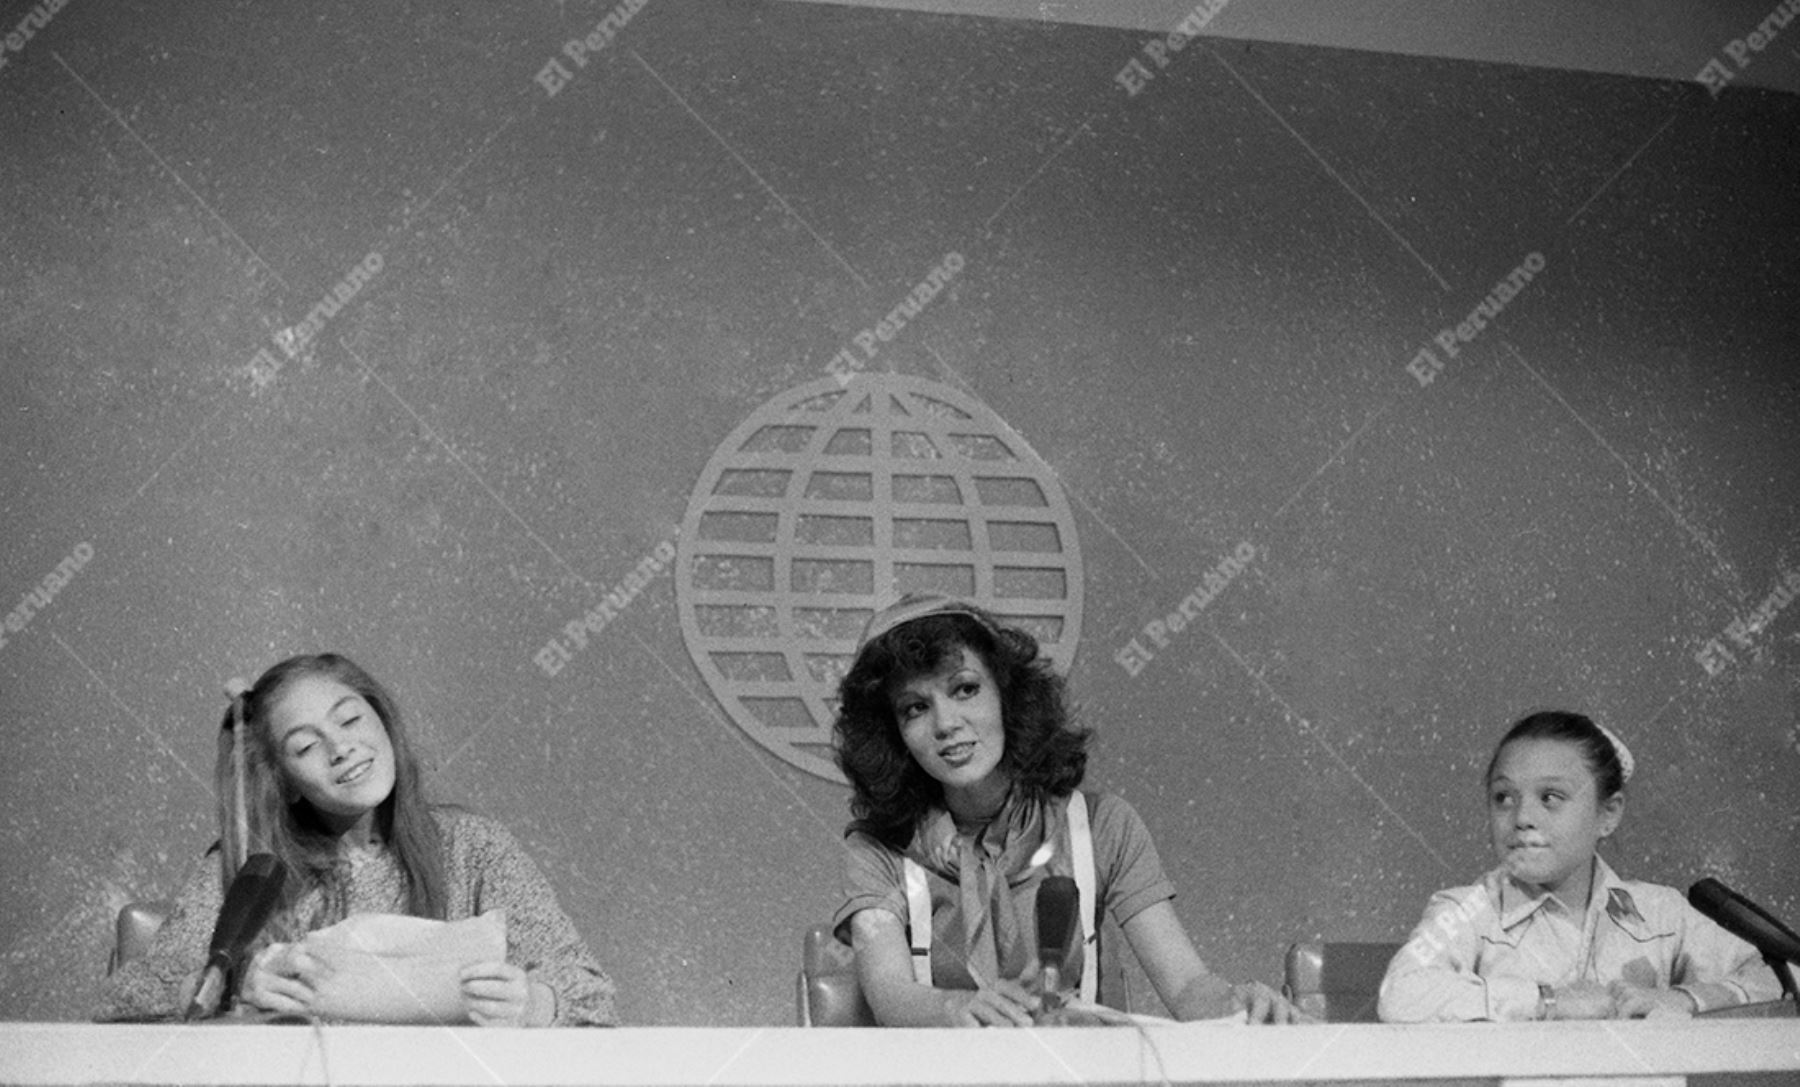 Lima - 7 setiembre 1981 / Programa infantil "Hola Yola" que conduce la animadora Yola Polastri en América Televisión.